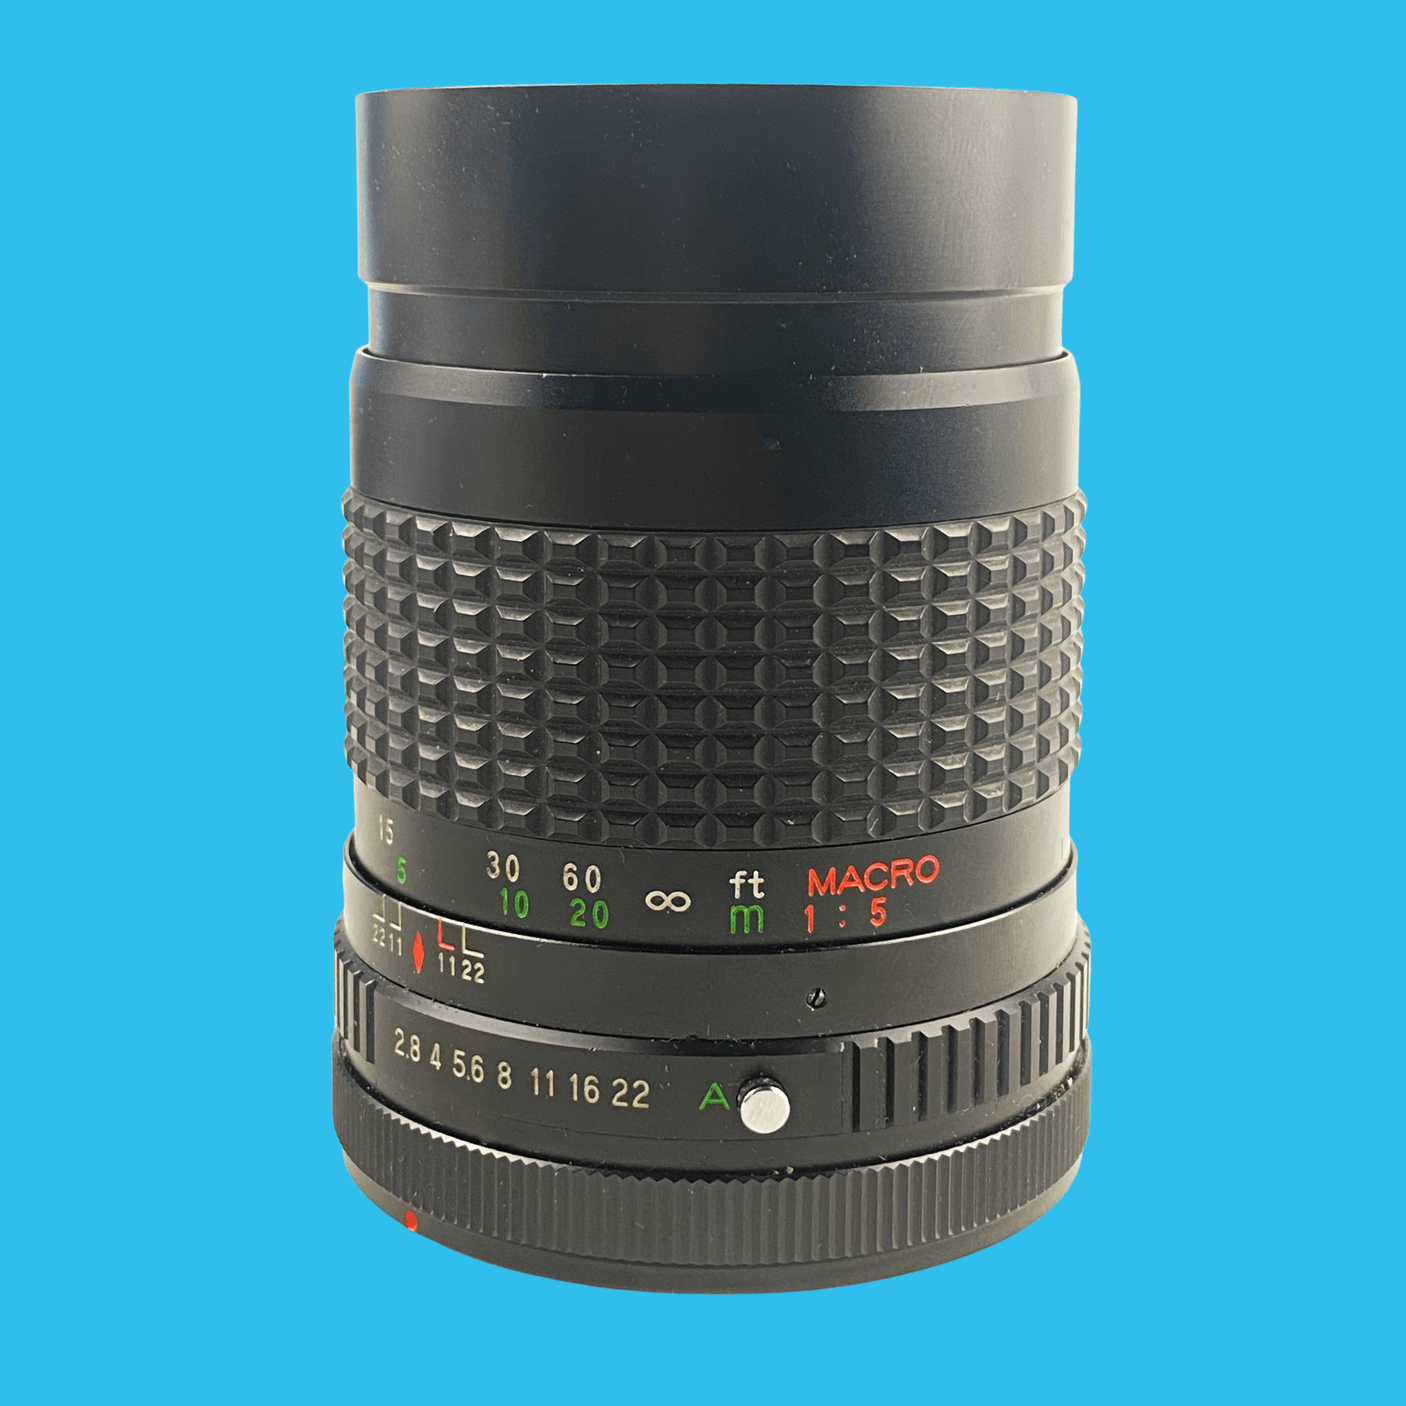 Ensinor 135mm f/2.8 Camera Lens